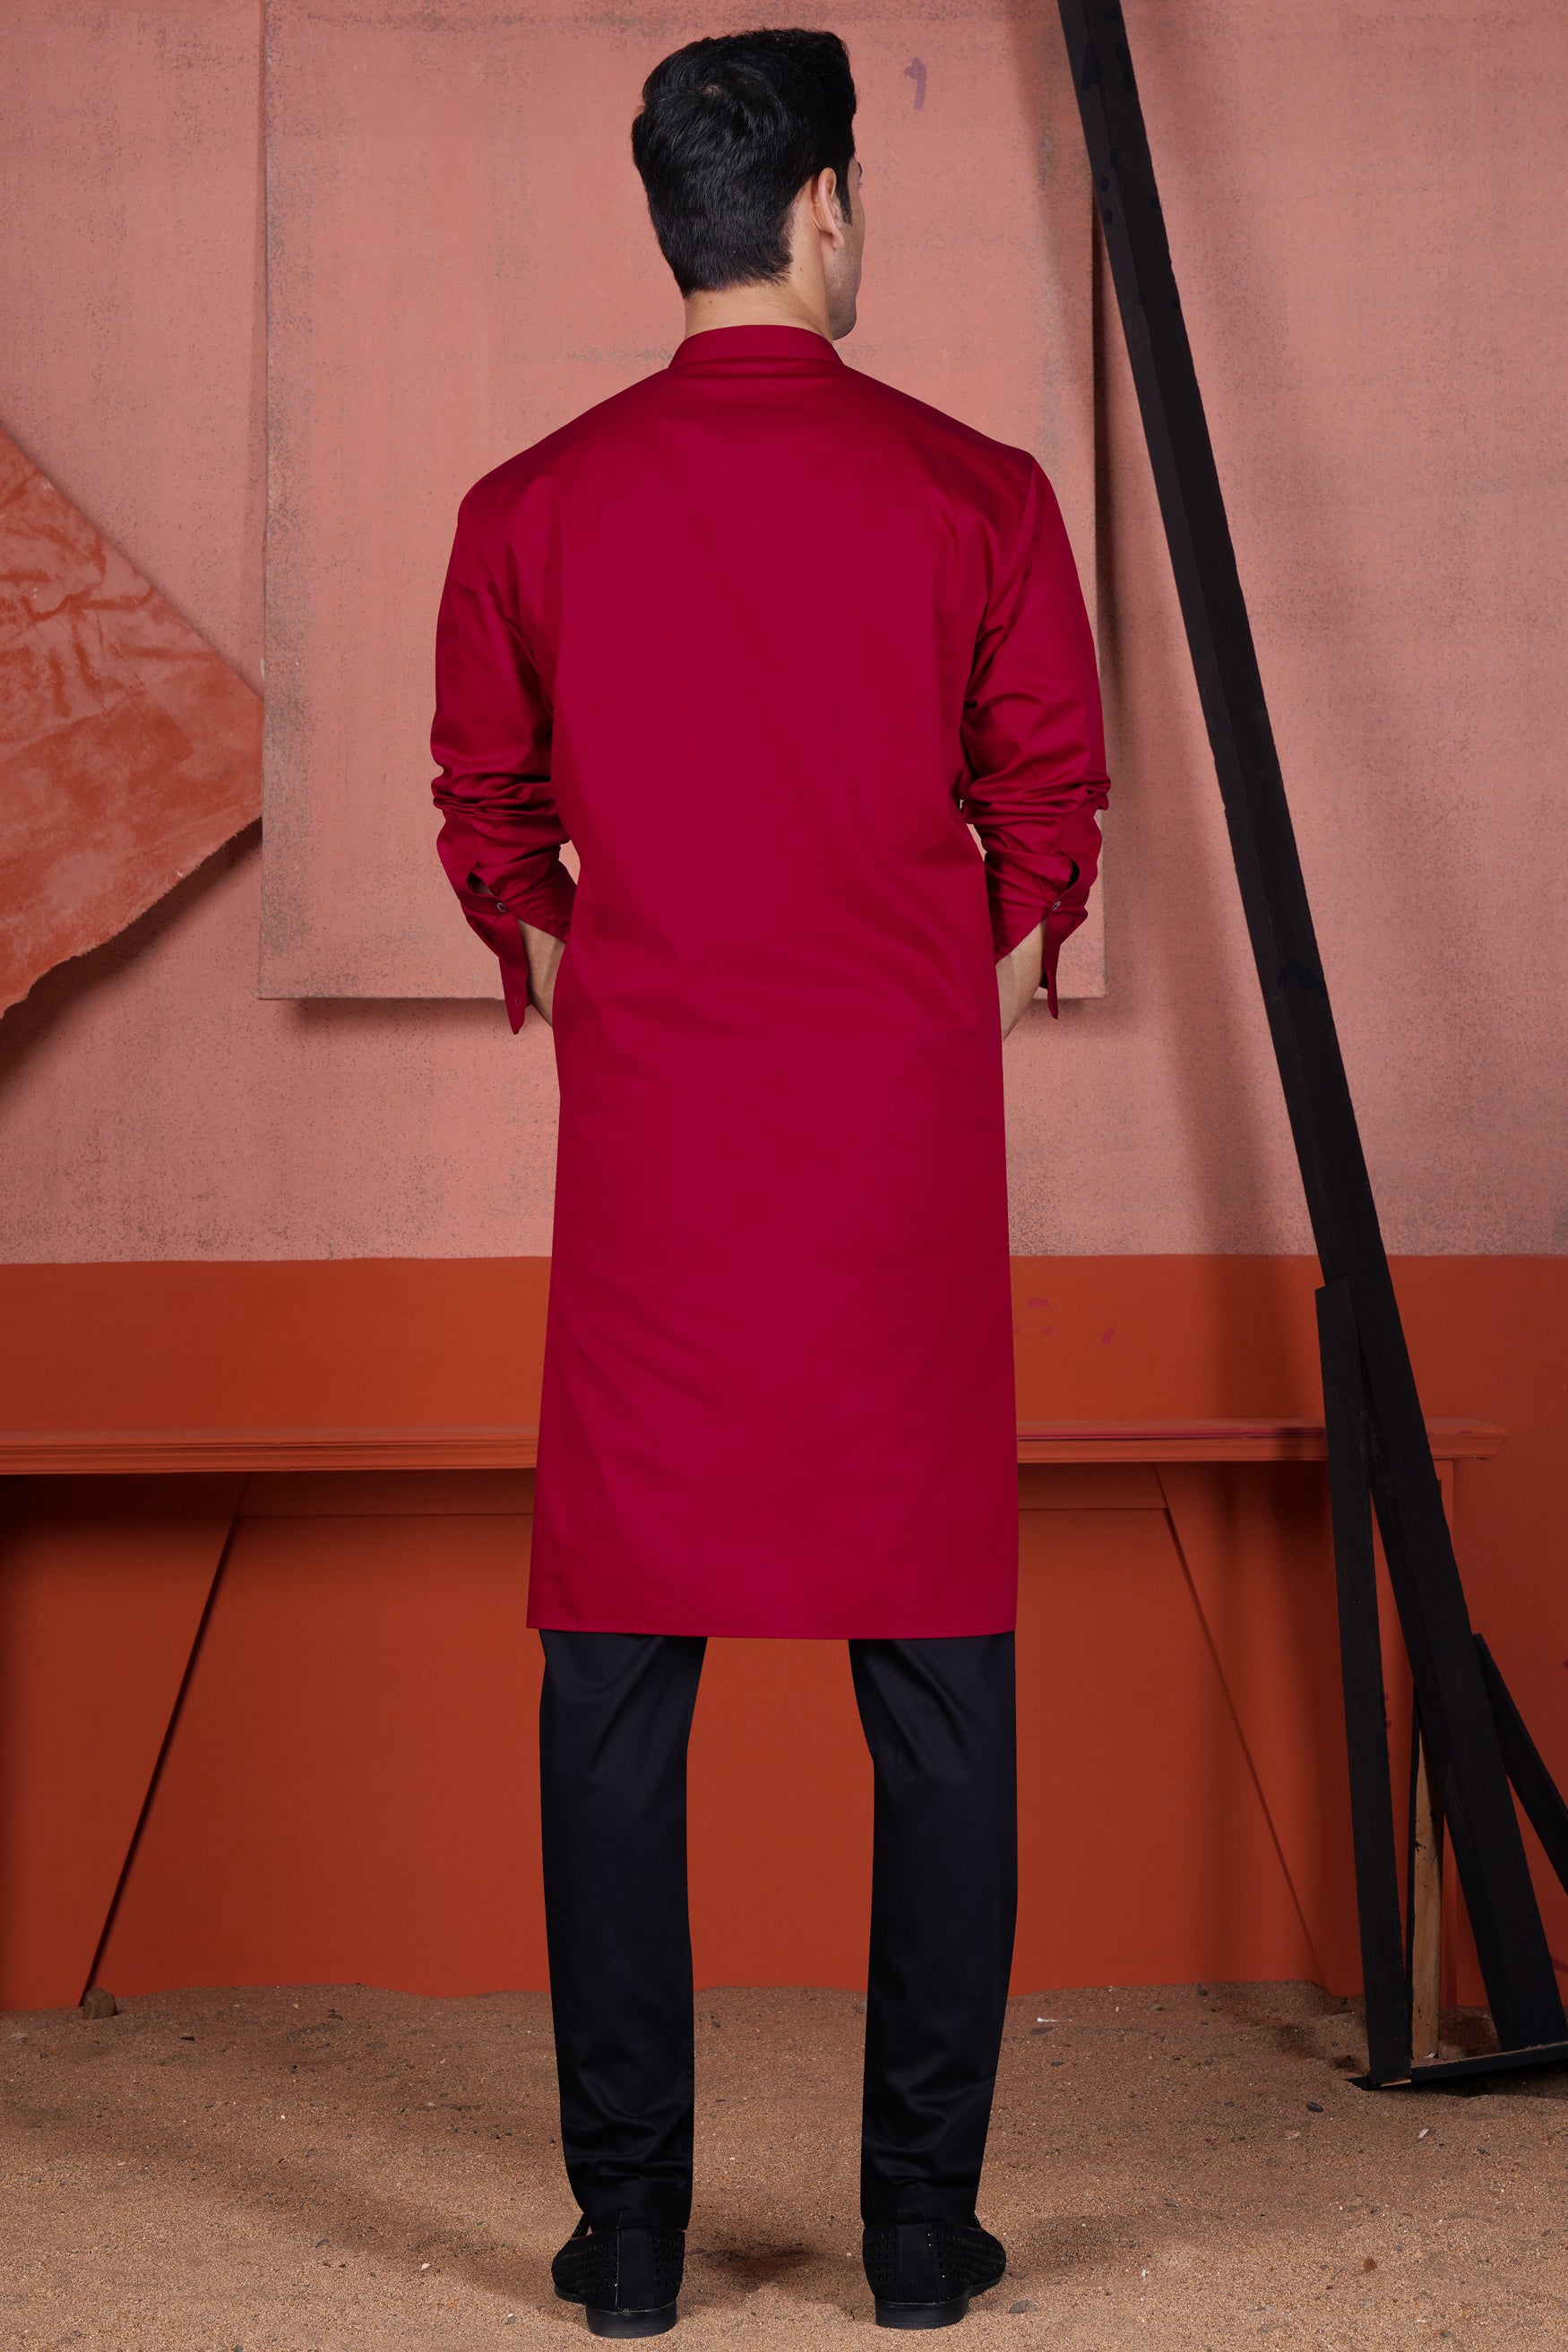 Vivid Auburn Red Multicolour Kutch Work Patches with Mirror Work Subtle Sheen Super Soft Premium Cotton Designer Kurta